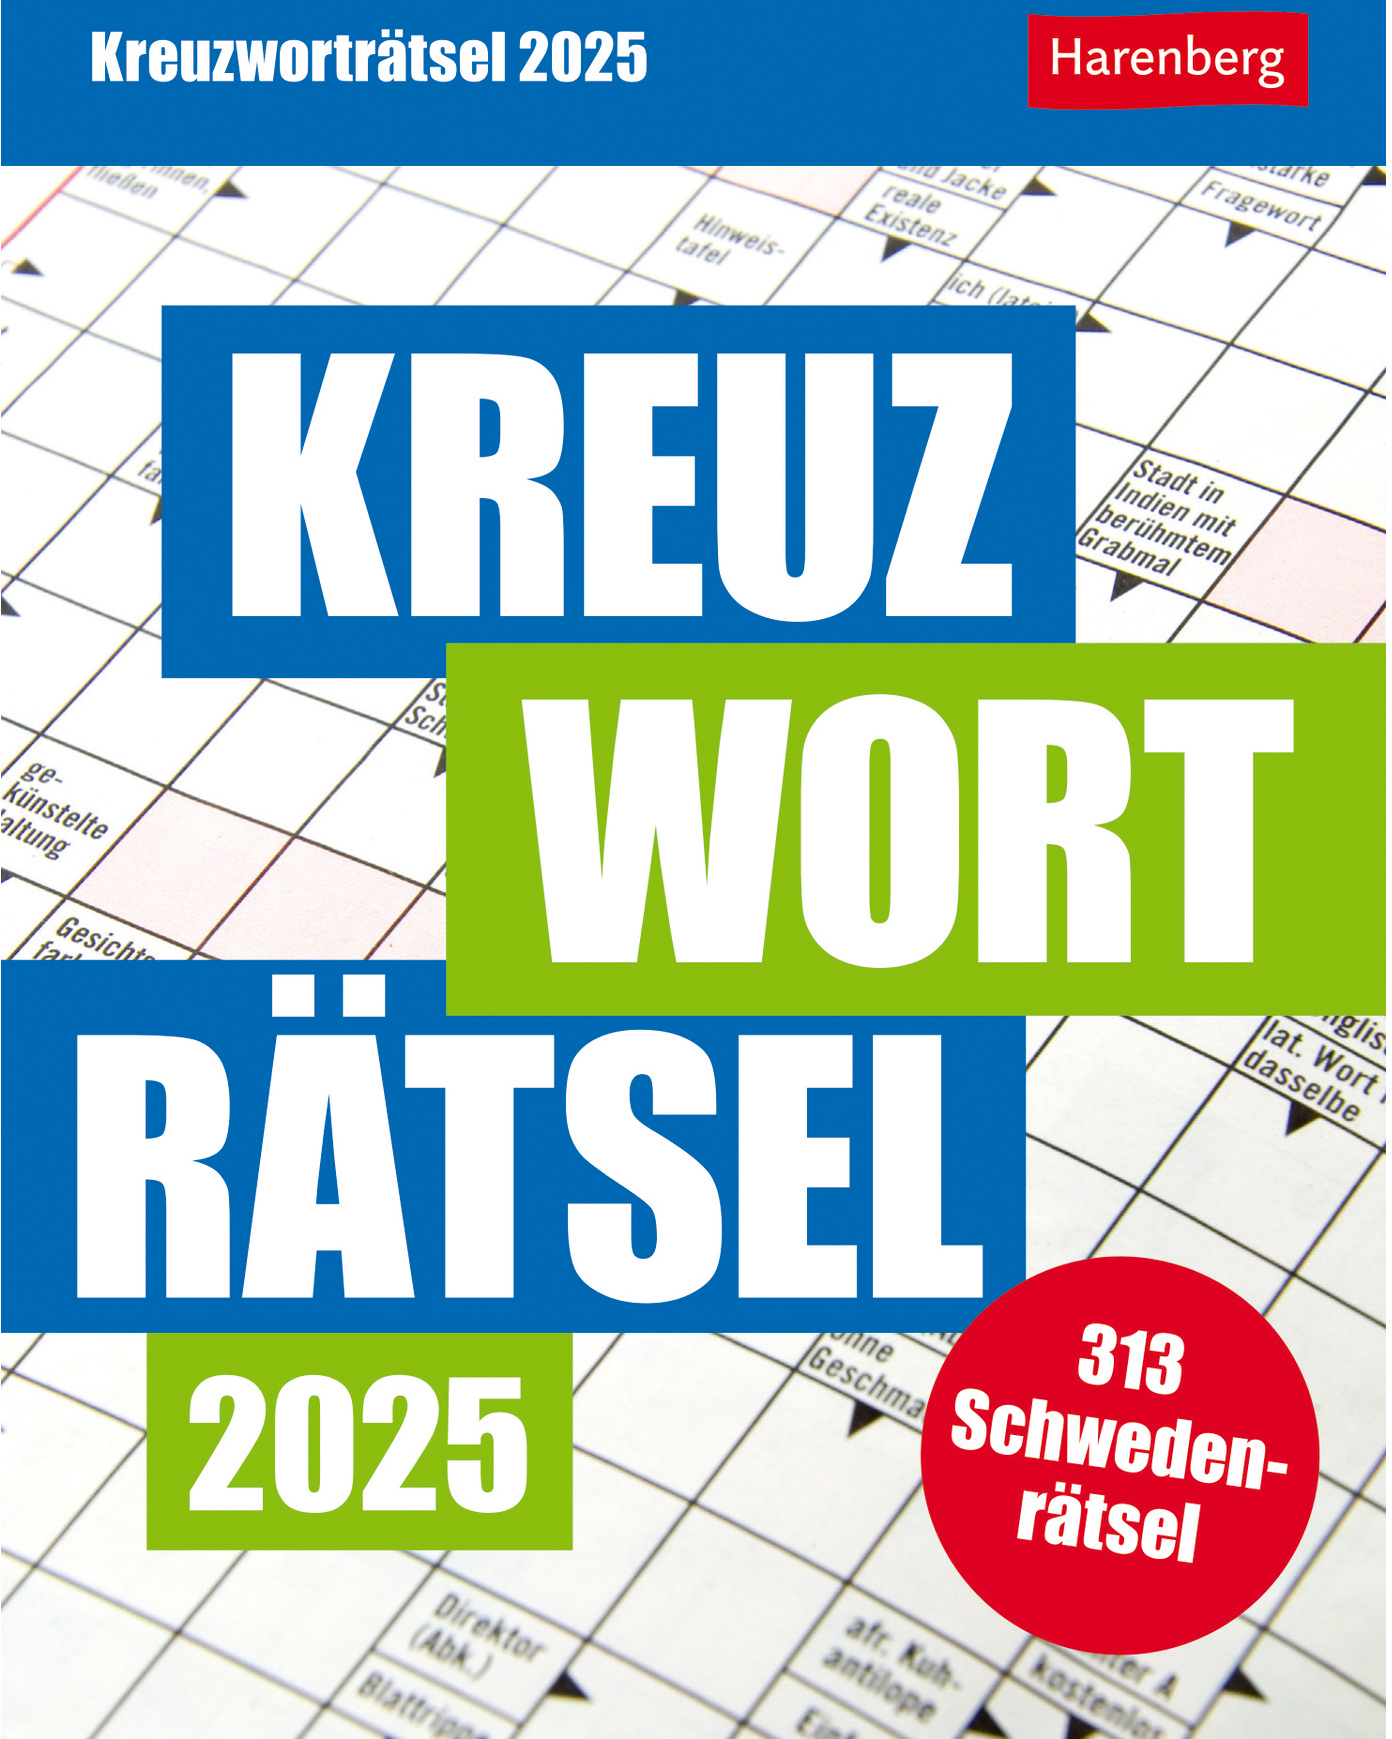 HARENBERG Calendrier détachable 2025 2110400+25 Kreuzworträtsel DE 12.5x16cm